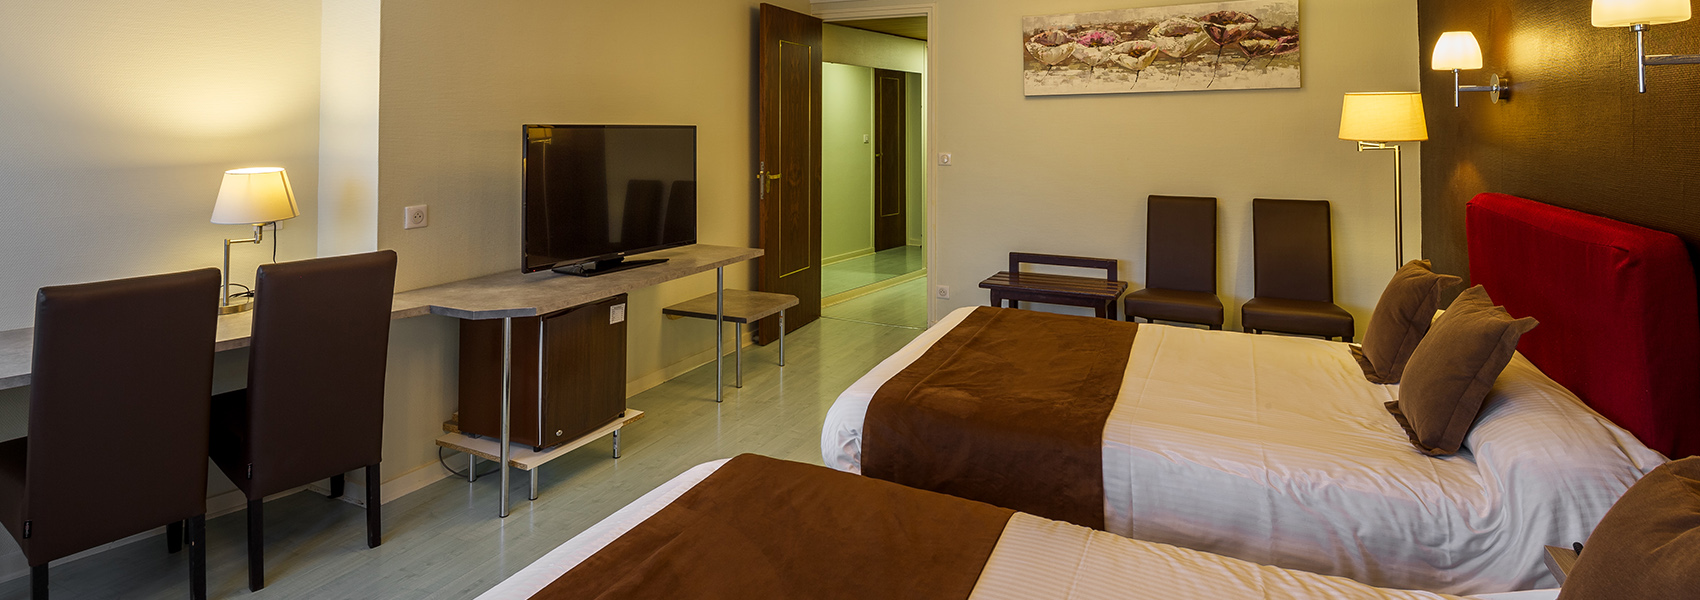 Das Team des Hotels Saint-Hubert in Saint-Claude bietet Ihnen Drei-Sterne-Komfort mit 30 Zimmern und einer Suite.